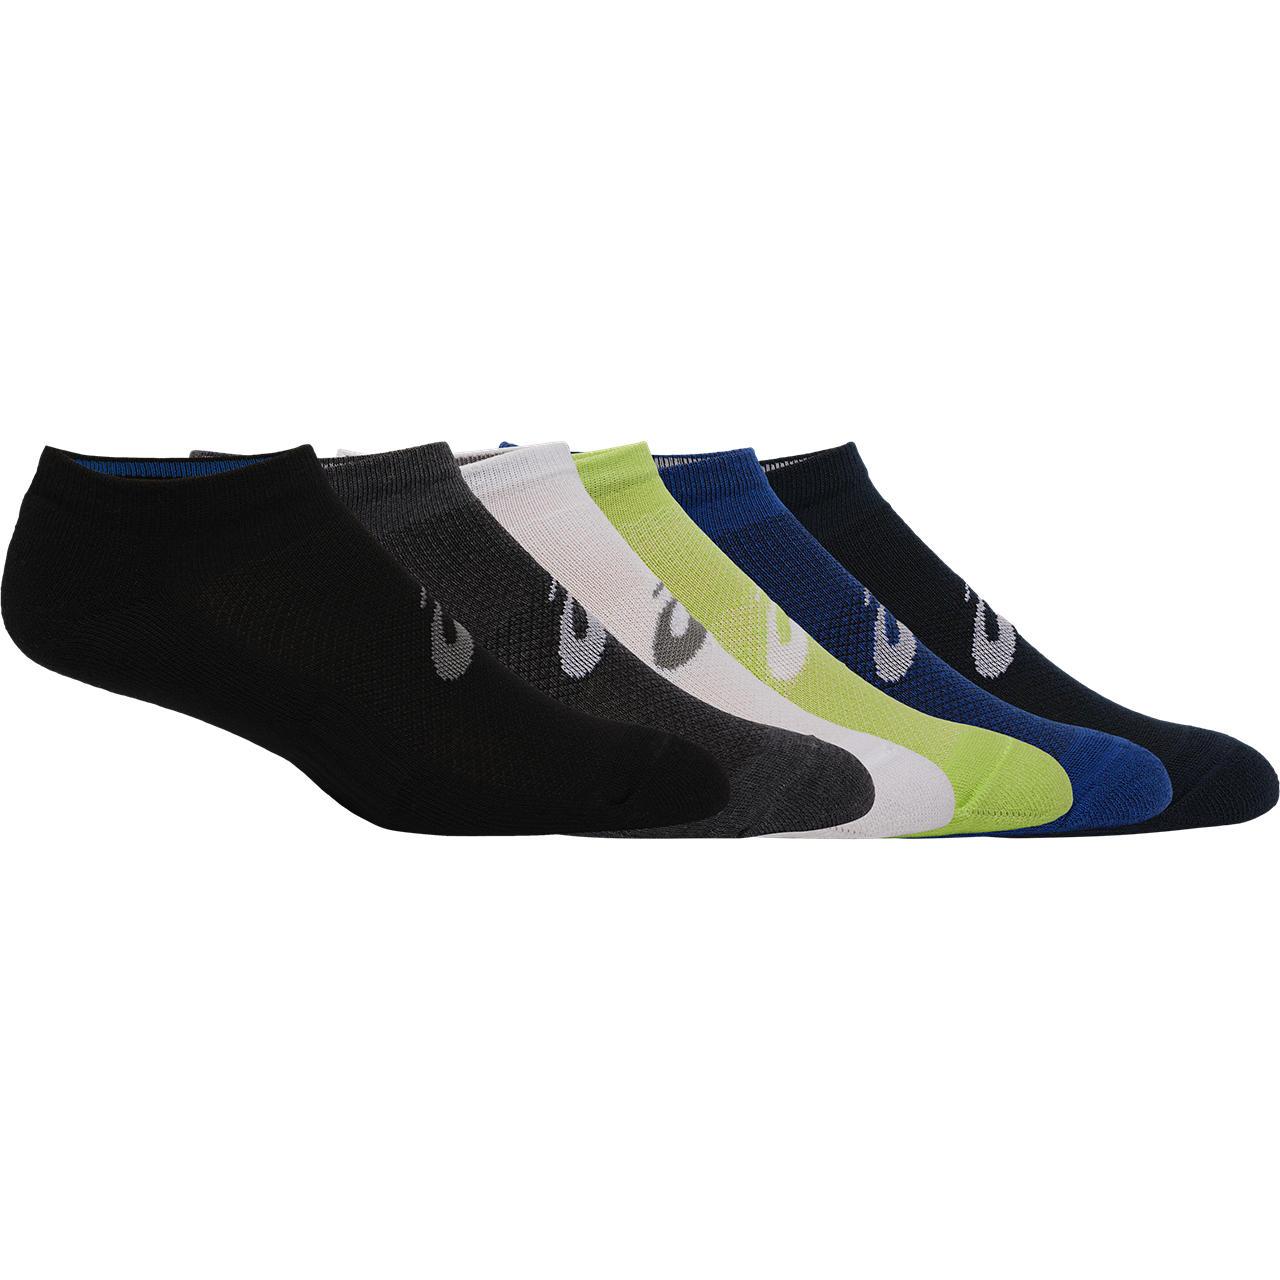 Asics 6ppk Ankle Sock - Multi